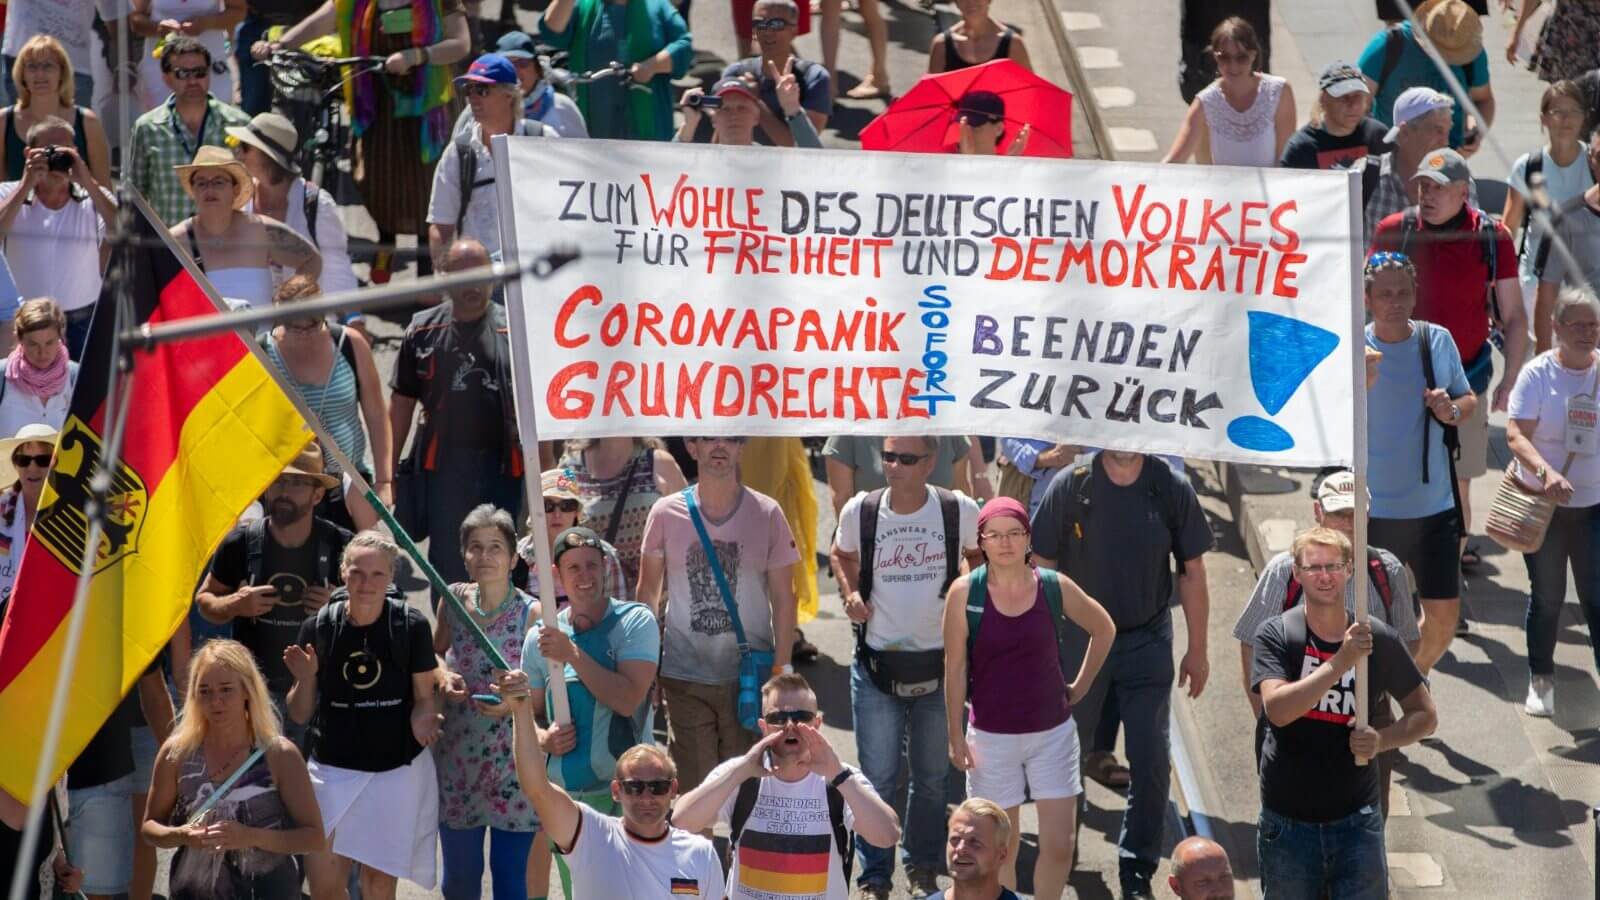 Am vergangenen Samstag fanden in Berlin Proteste gegen die Corona-Maßnahmen statt. In Sozialen Netzwerken kursieren viele falsche Behauptungen über die Anzahl der Teilnehmer. (Quelle: Picture Alliance/ Christoph Soeder/ dpa)